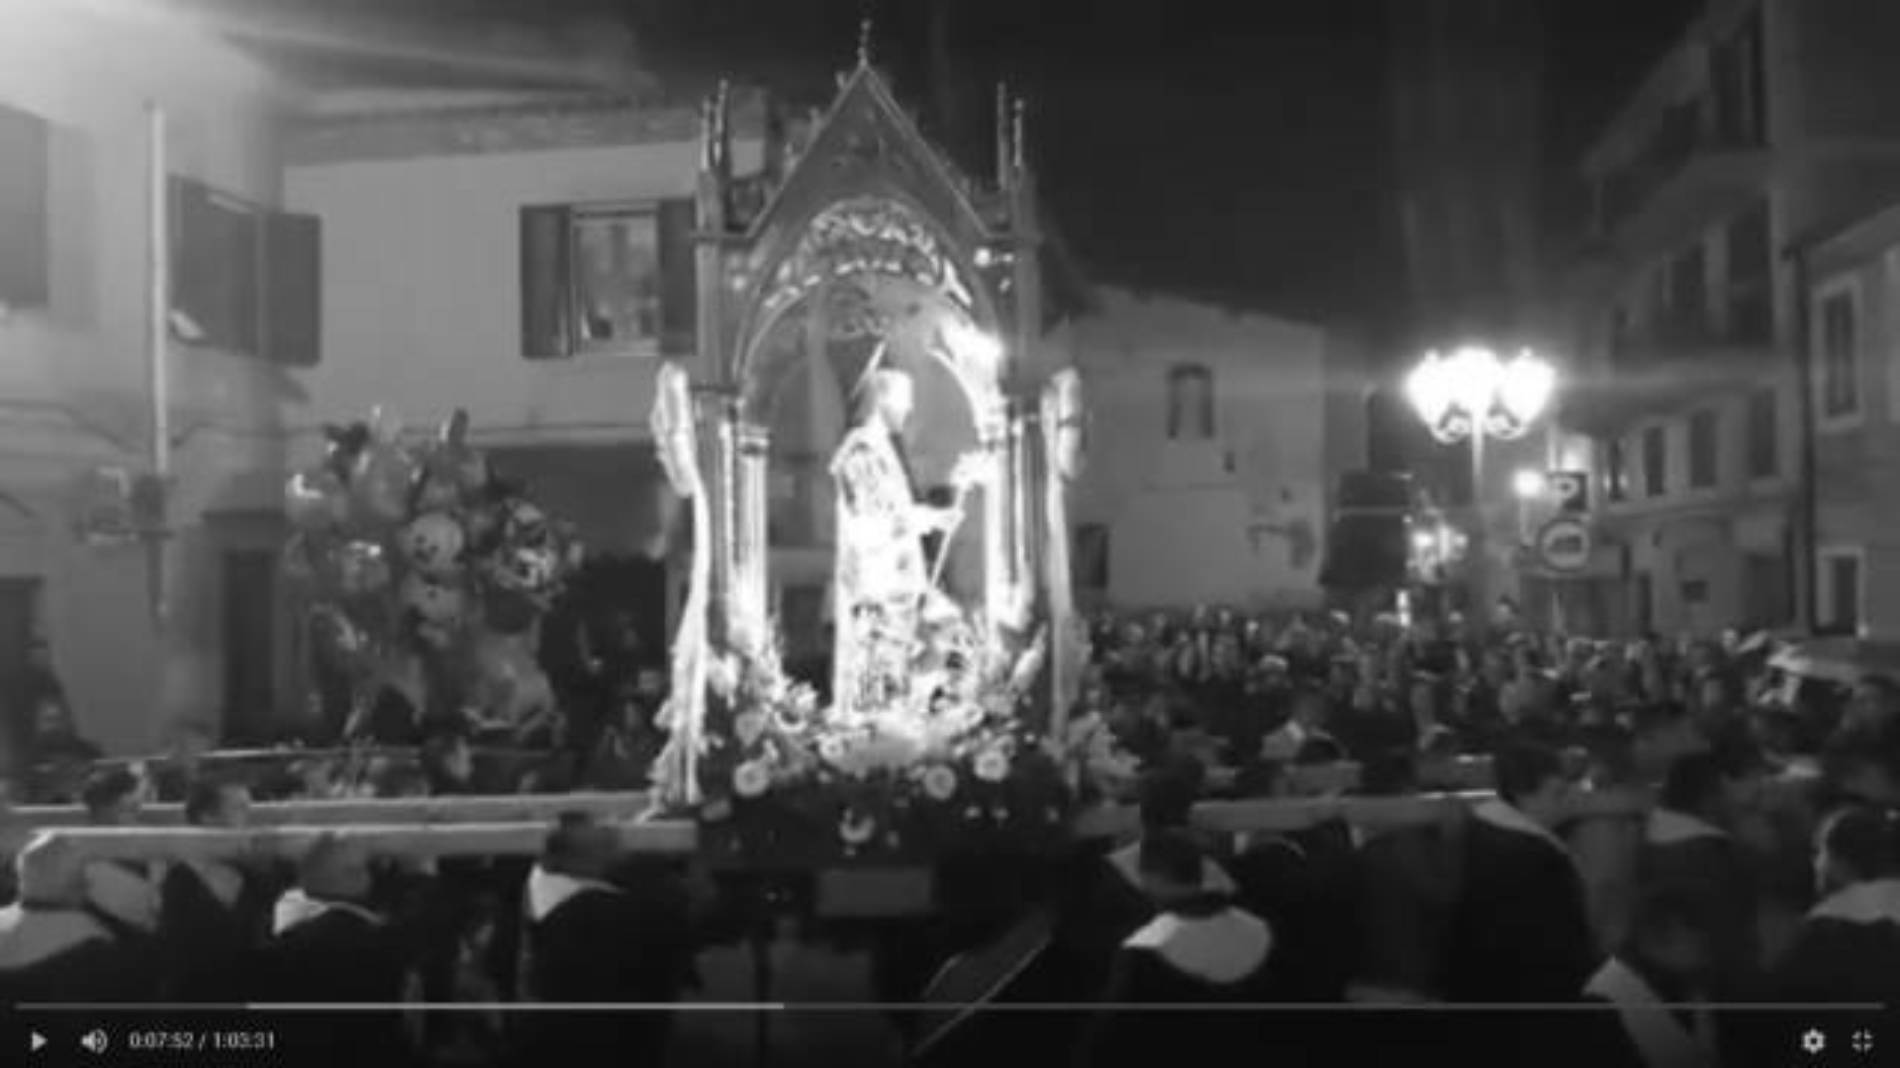 Barrafranca. [VIDEO] La processione di San Giuseppe 2019